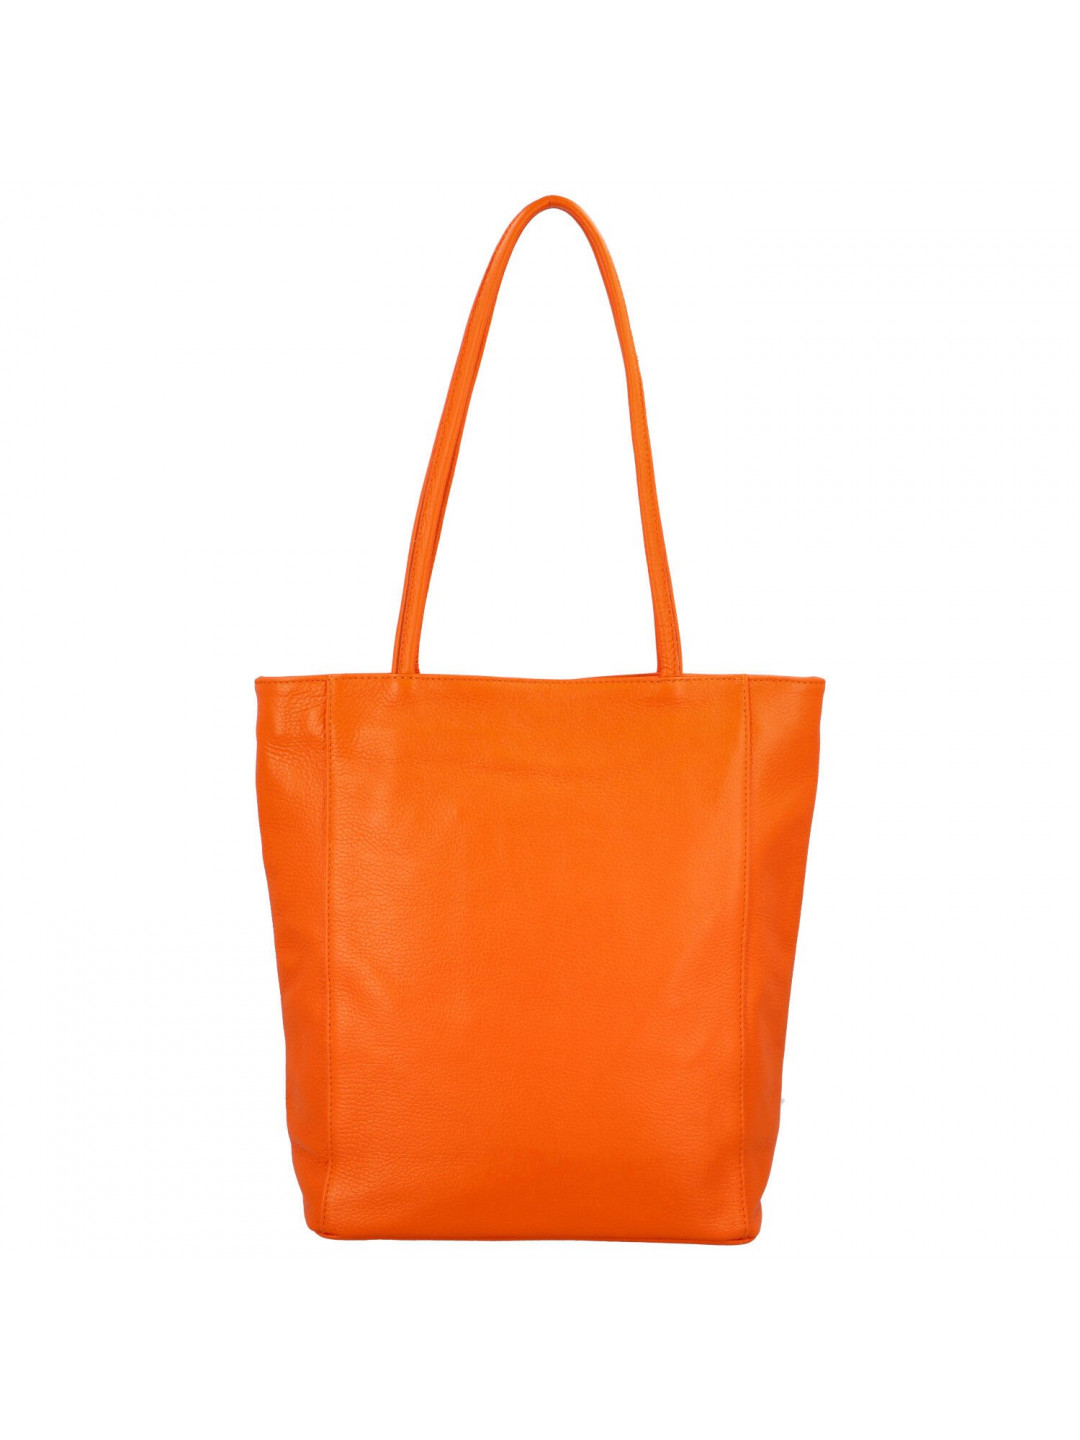 Luxusní dámská kožená kabelka Jane oranžová